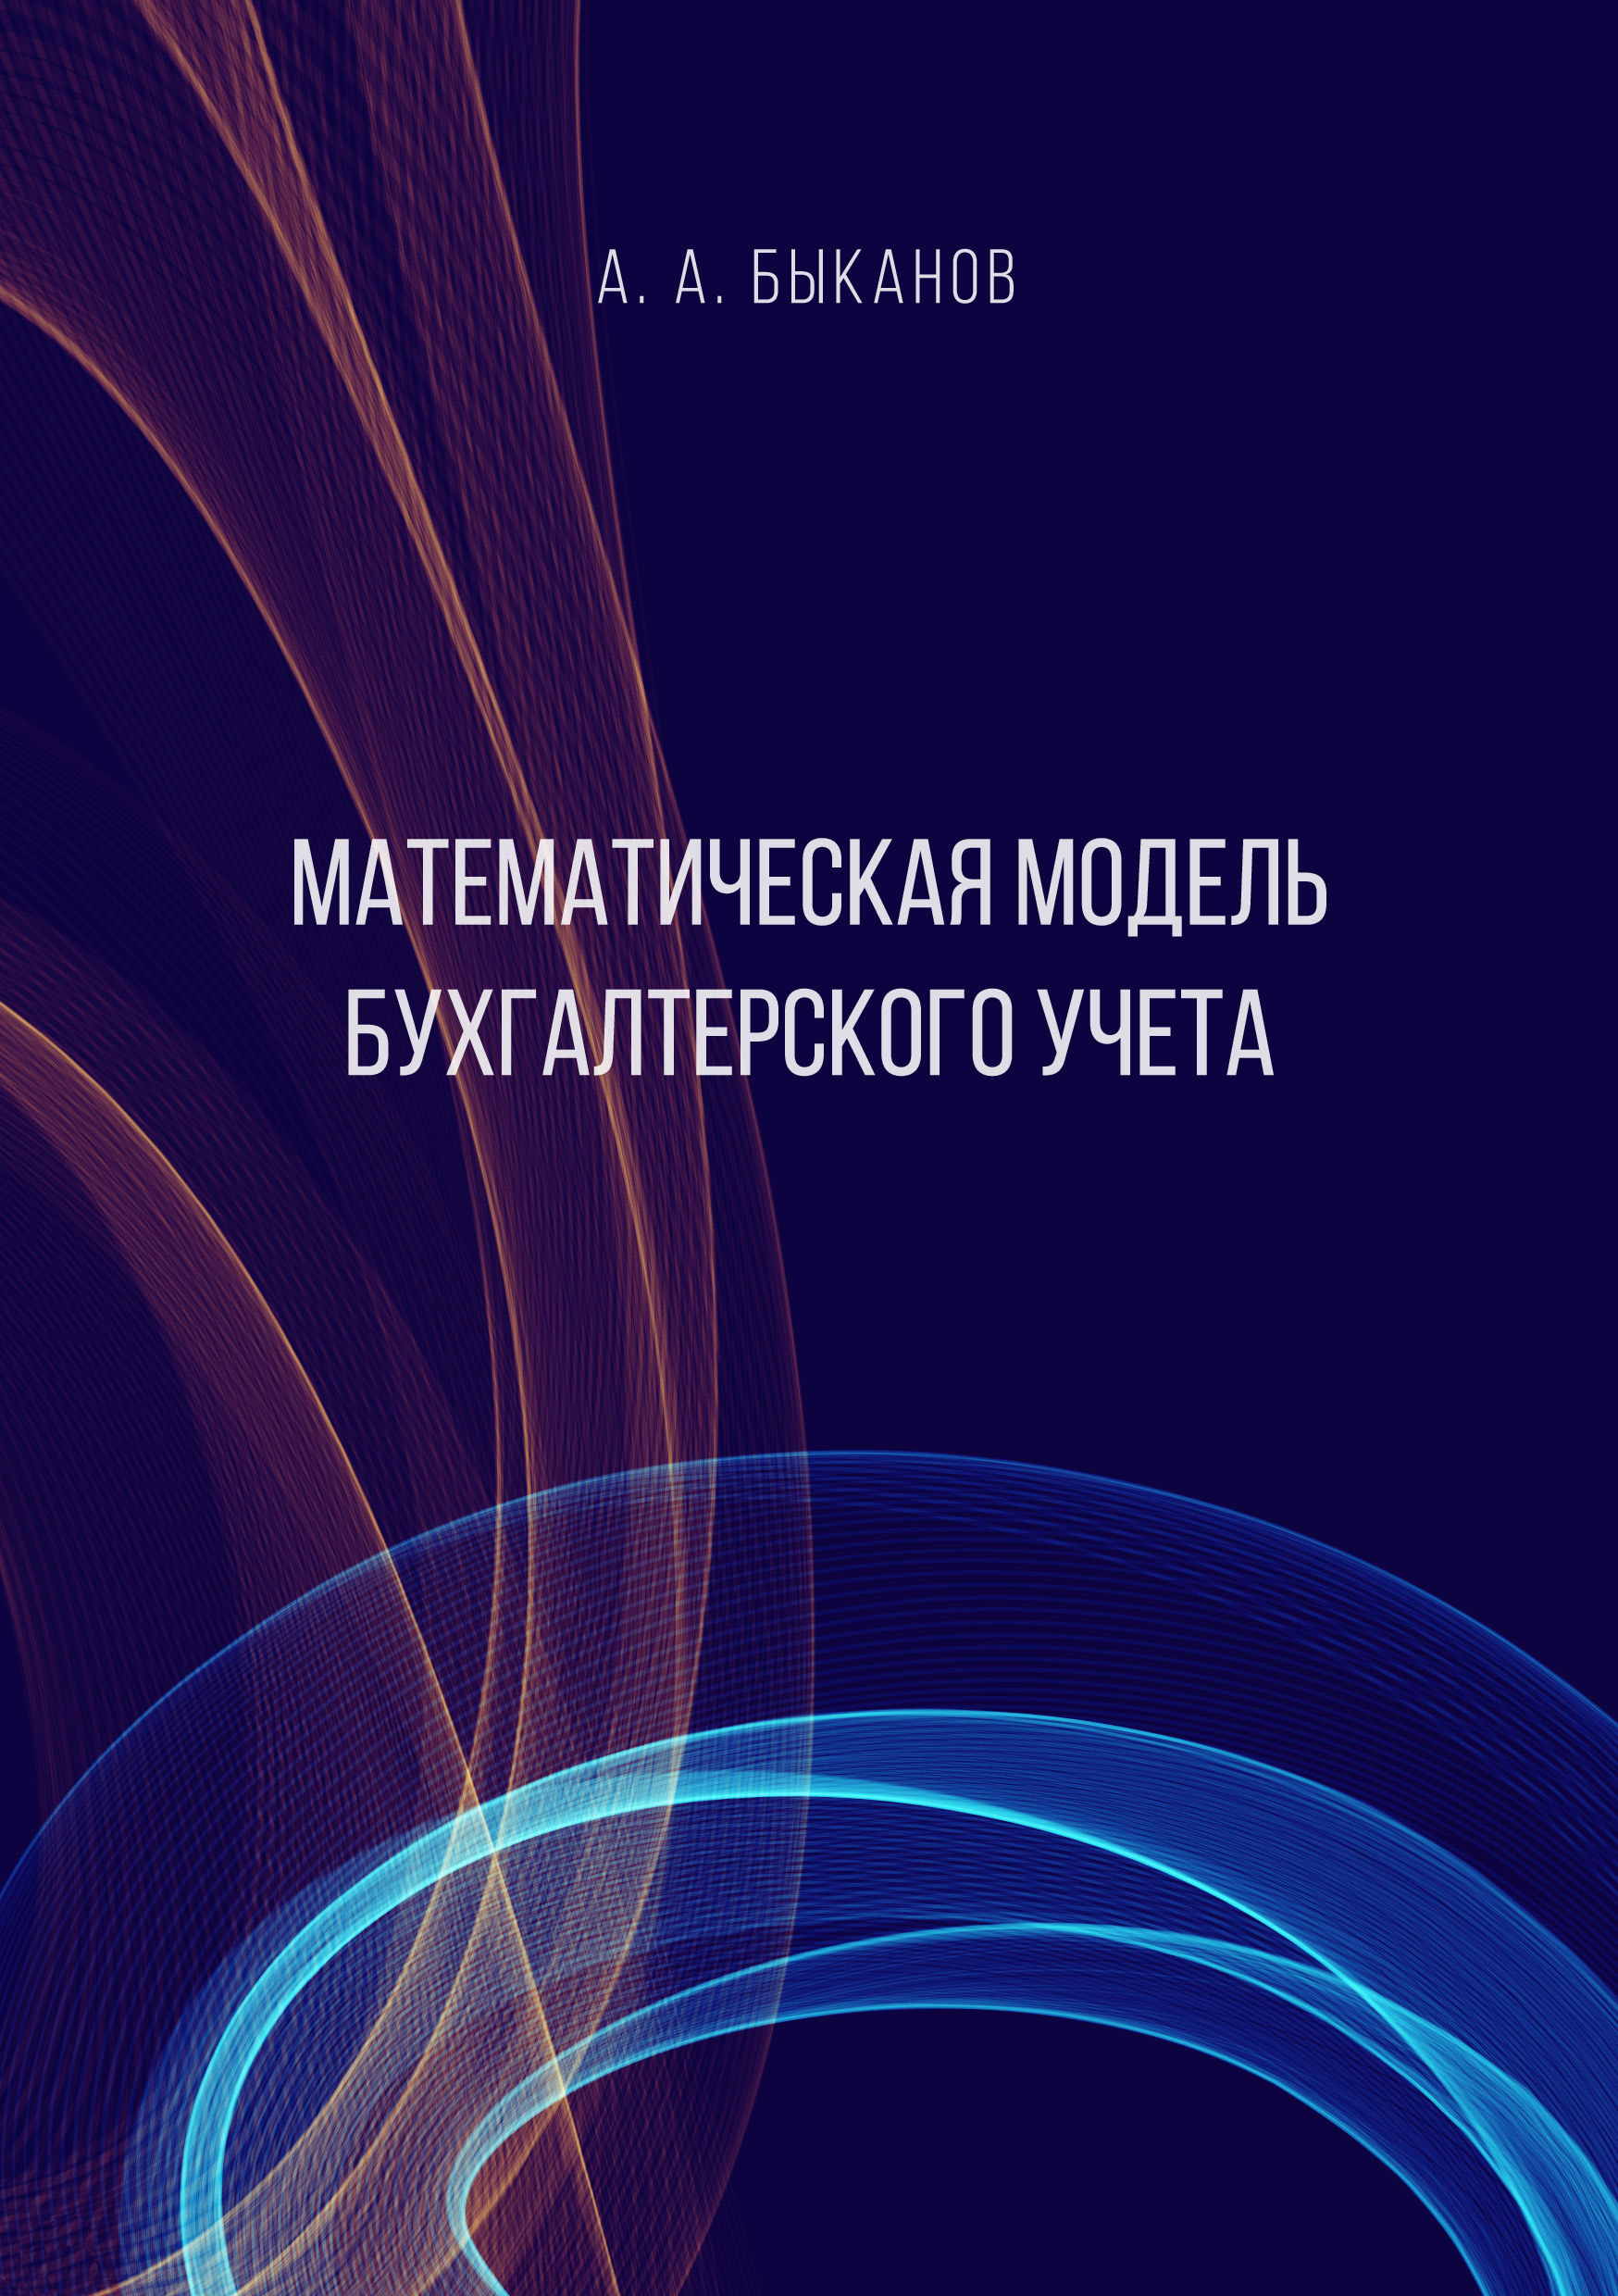 Книга Математическая модель бухгалтерского учета из серии , созданная Анатолий Быканов, может относится к жанру Бухучет, налогообложение, аудит. Стоимость электронной книги Математическая модель бухгалтерского учета с идентификатором 36085101 составляет 149.00 руб.